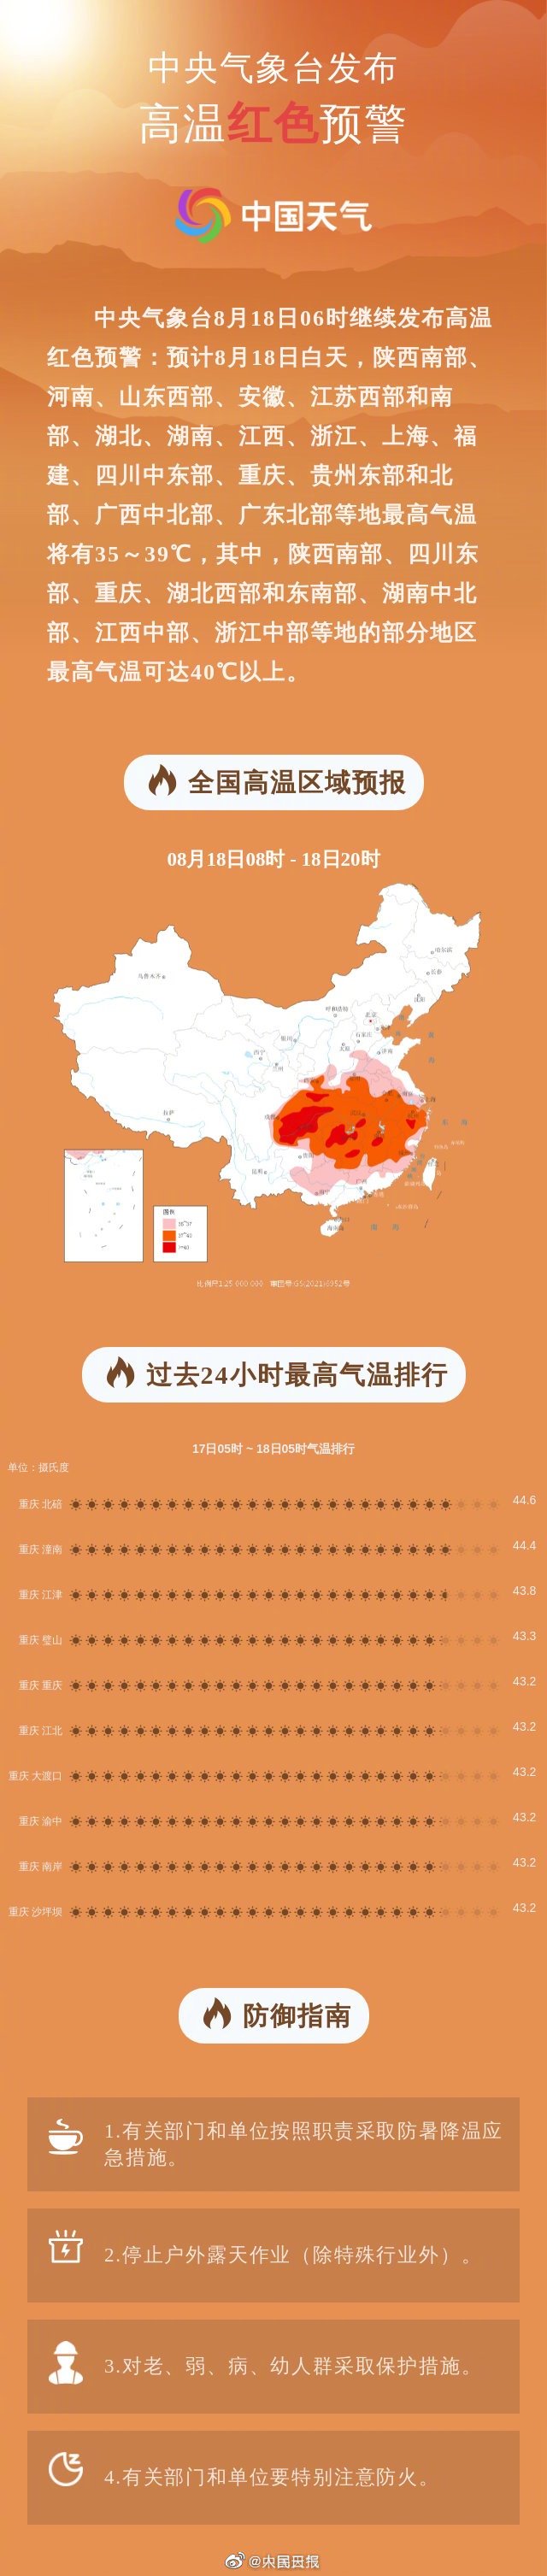 全国高温排行榜前十 全国高温排行榜前10都在重庆